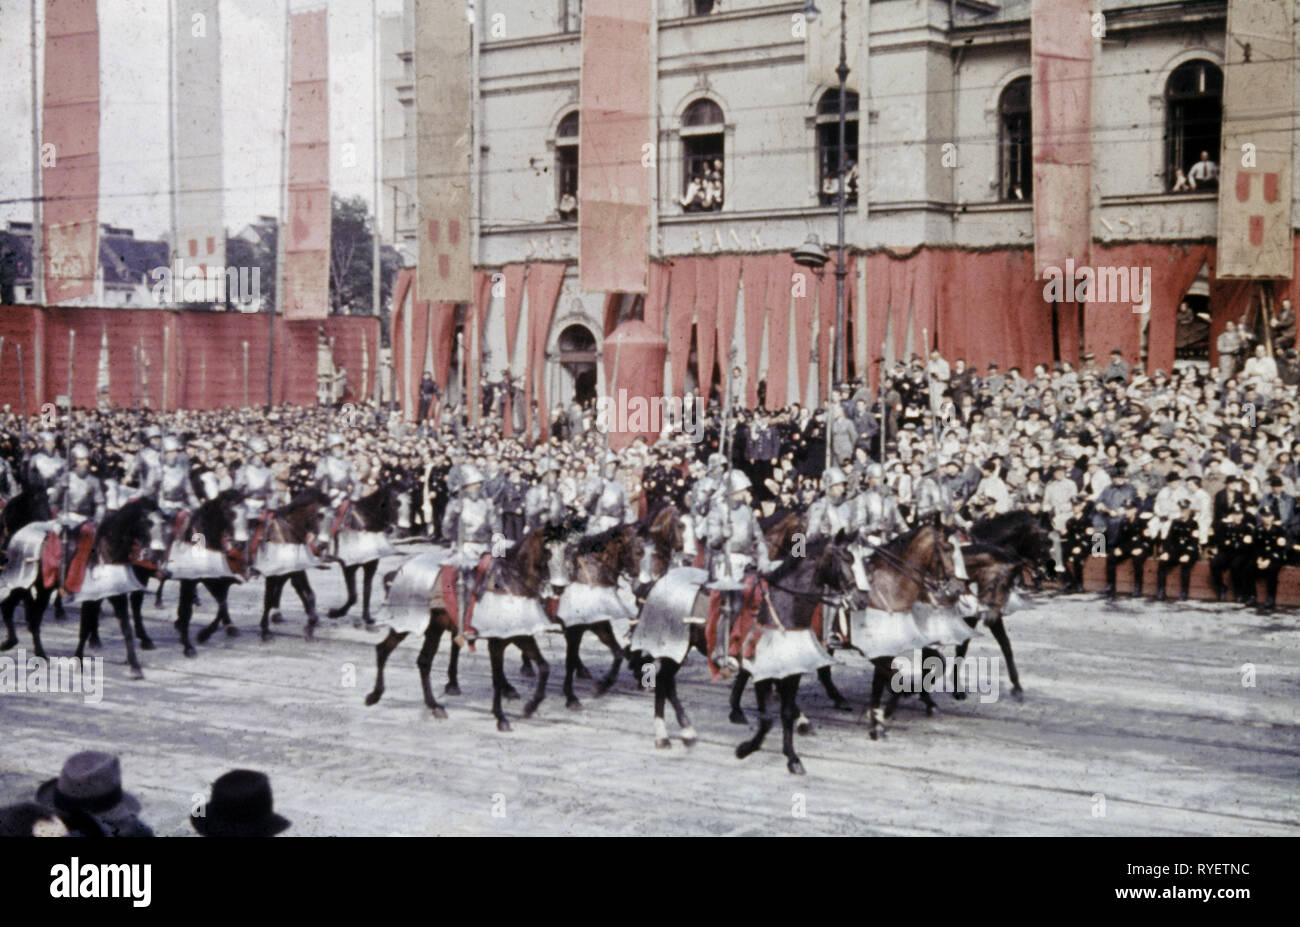 Il nazismo / socialismo nazionale, Evento 'Tag der Deutschen Kunst" (il giorno della cultura tedesca), pageant, marzo-passato del 'knigths', Monaco di Baviera, Germania, 1939, Additional-Rights-Clearance-Info-Not-Available Foto Stock